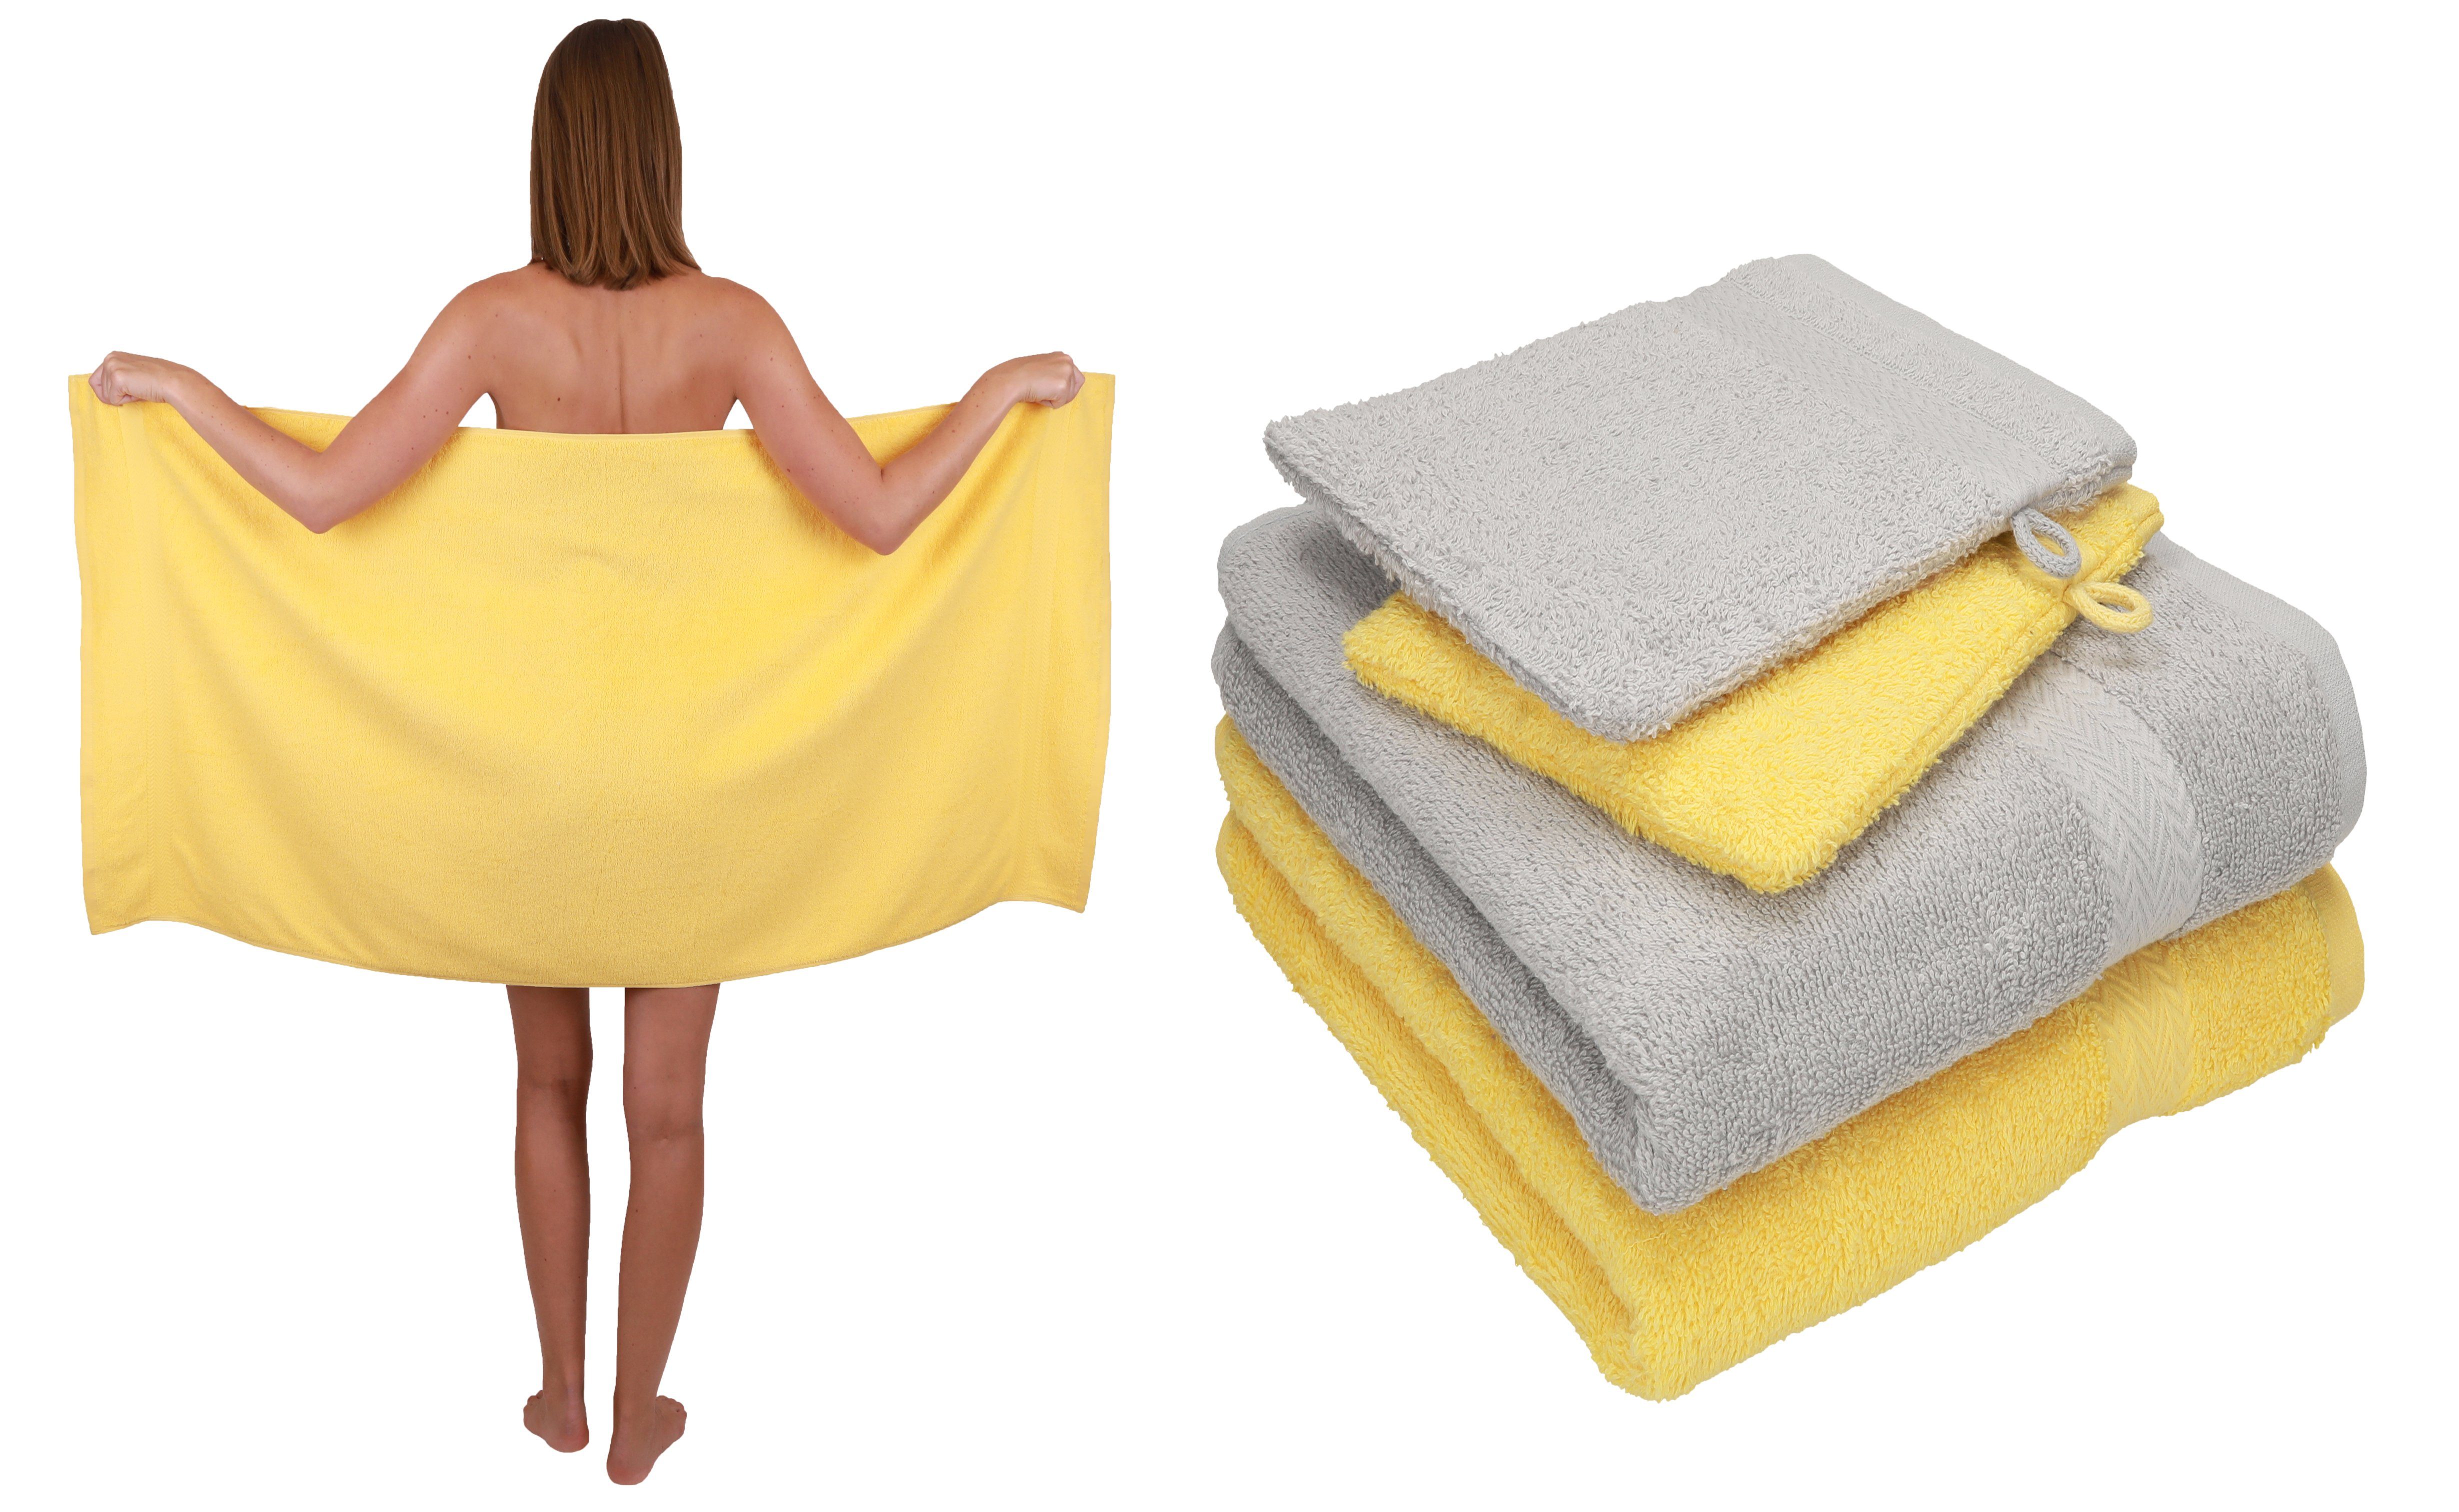 Betz Handtuch Set 5 TLG. Handtuch Set Single Pack 100% Baumwolle 1 Duschtuch 2 Handtücher 2 Waschhandschuhe, 100% Baumwolle gelb-silbergrau